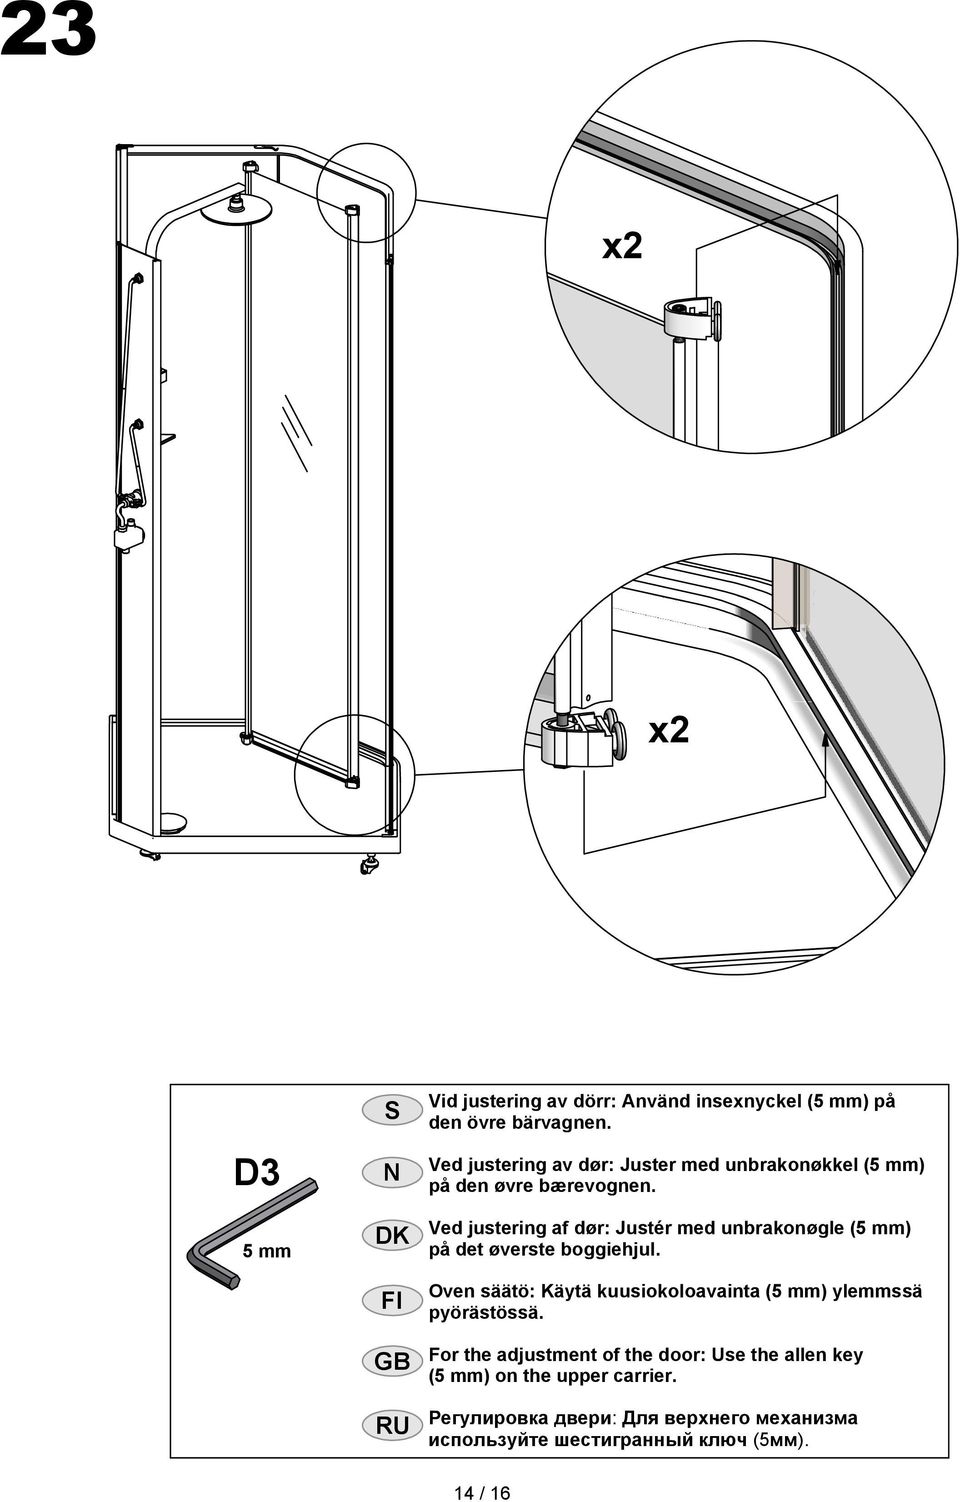 Ved justering af dør: Justér med unbrakonøgle (5 mm) på det øverste boggiehjul.